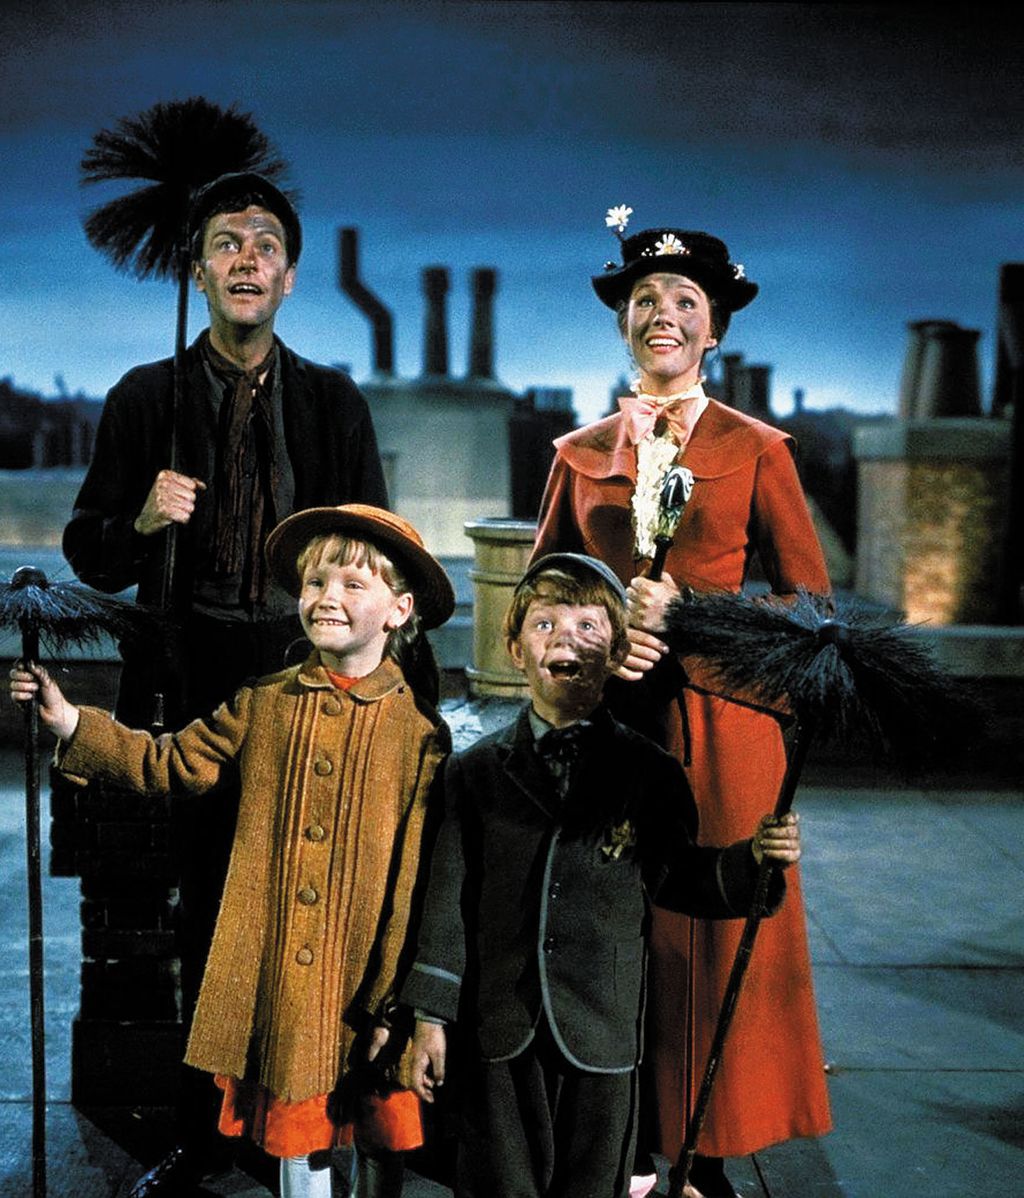 Mary Poppins, un clásico para abrir la jornada Disney